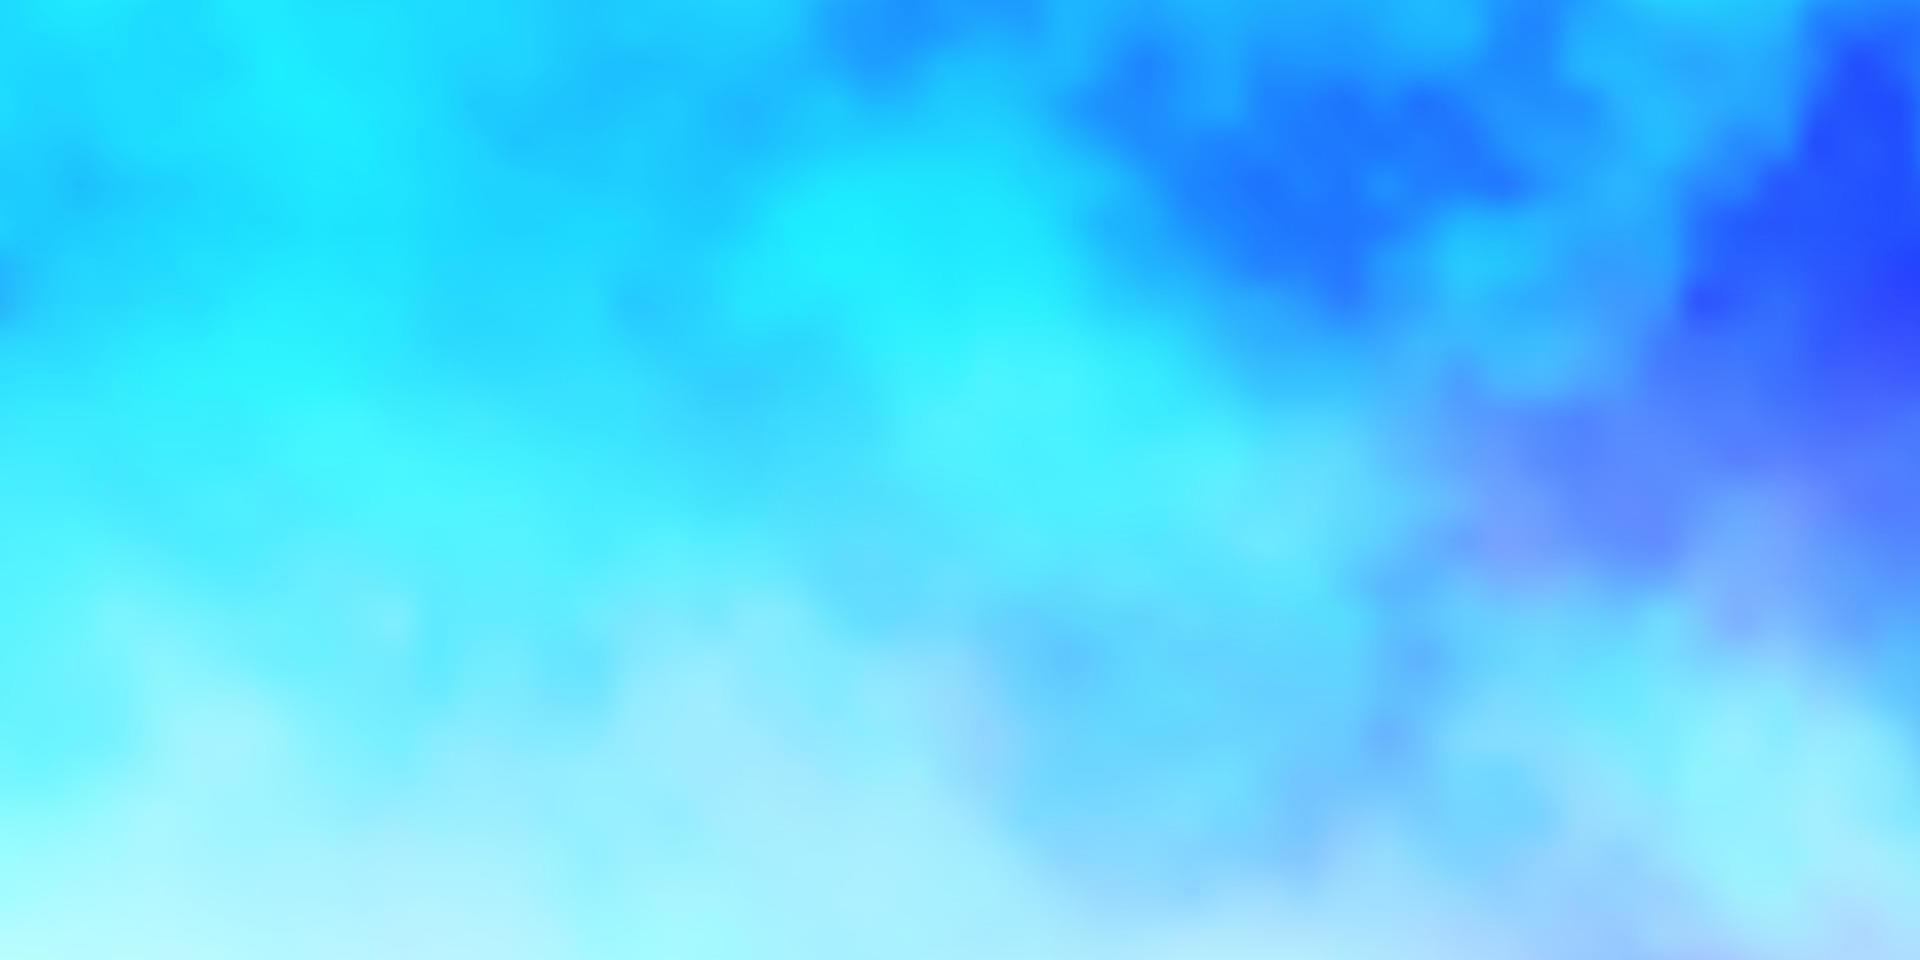 telón de fondo de vector azul claro con cúmulos.